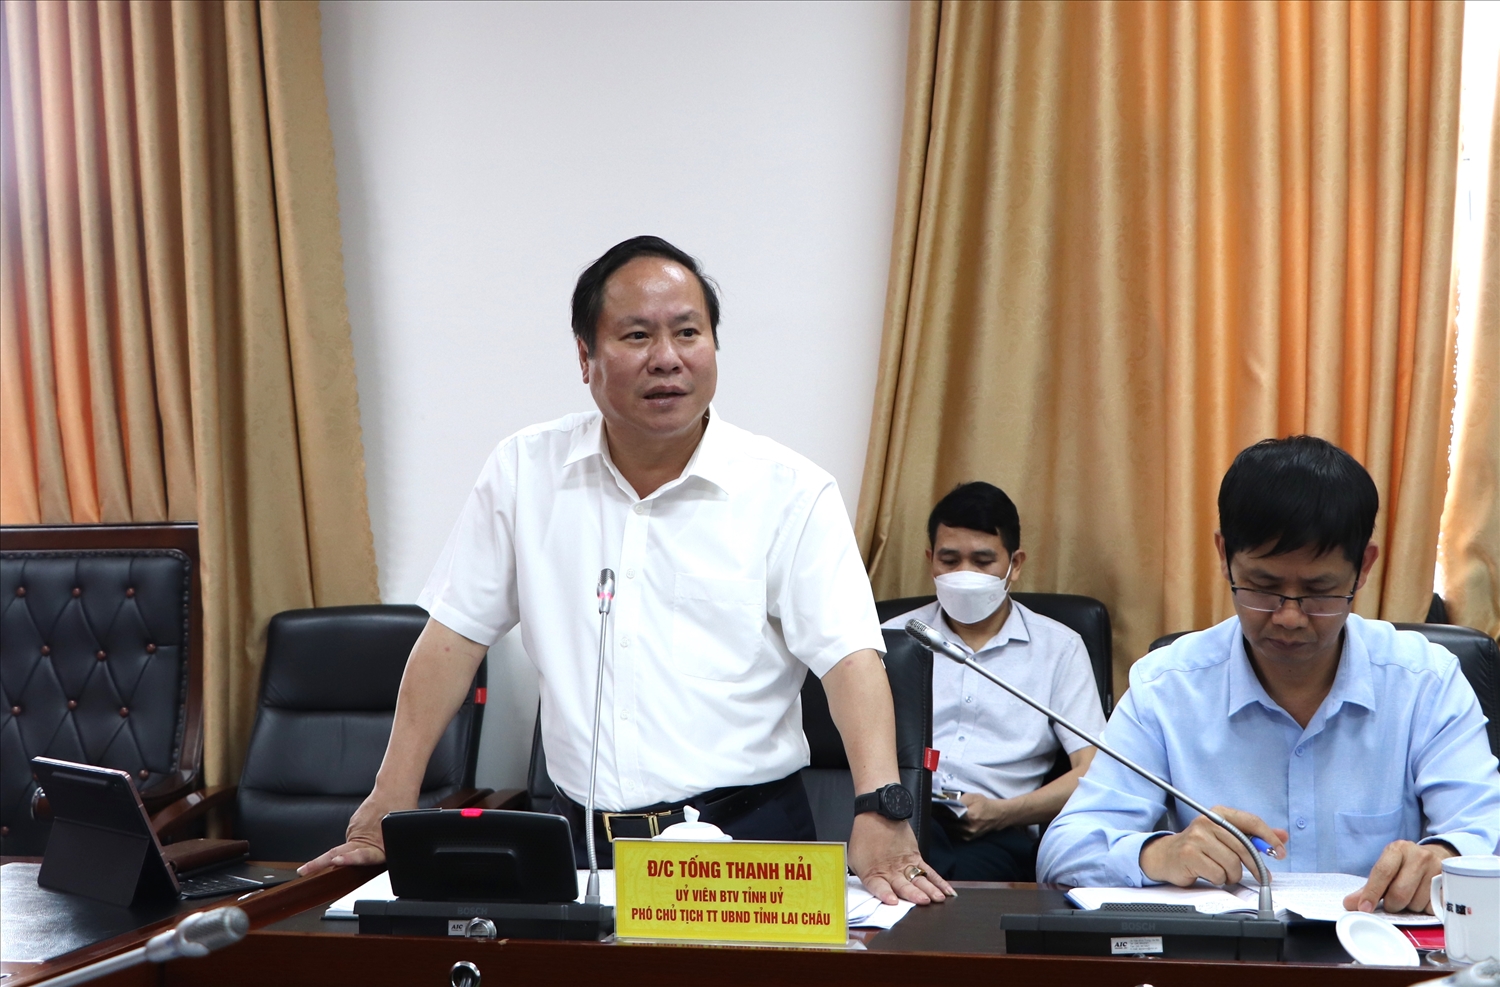 Phó Chủ tịch Thường trực UBND tỉnh Lai Châu Tống Thanh Hải cam kết thực hiện tốt công VSATTP, góp phần vào công tác chăm sóc và bảo vệ sức khoẻ Nhân dân các dân tộc tỉnh Lai Châu.